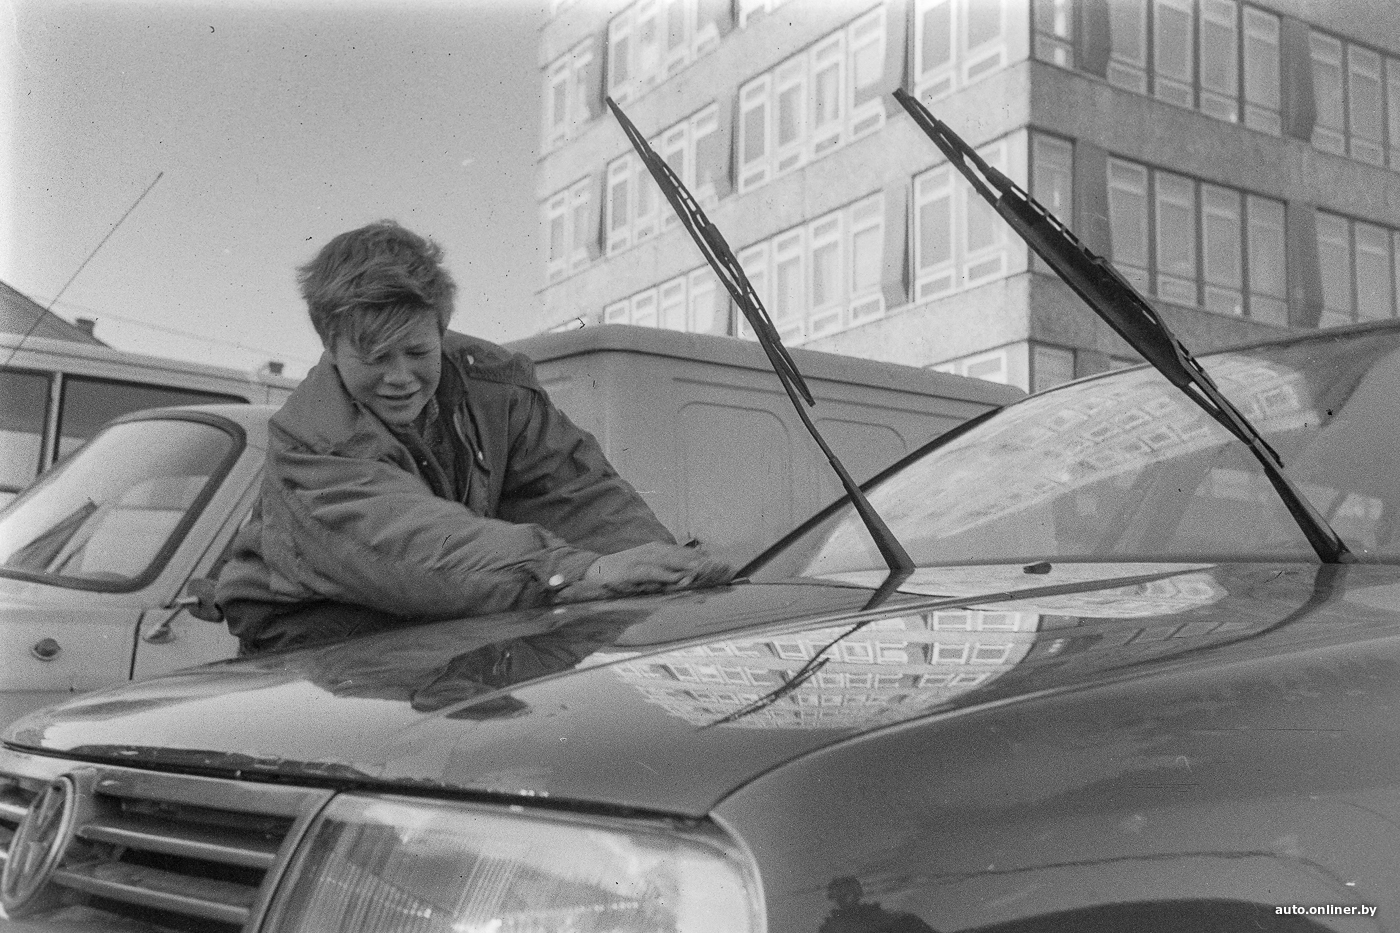 Тряпки и «крыша». Как в Беларуси в 90-е дети мыли машины и зарабатывали неплохие деньги